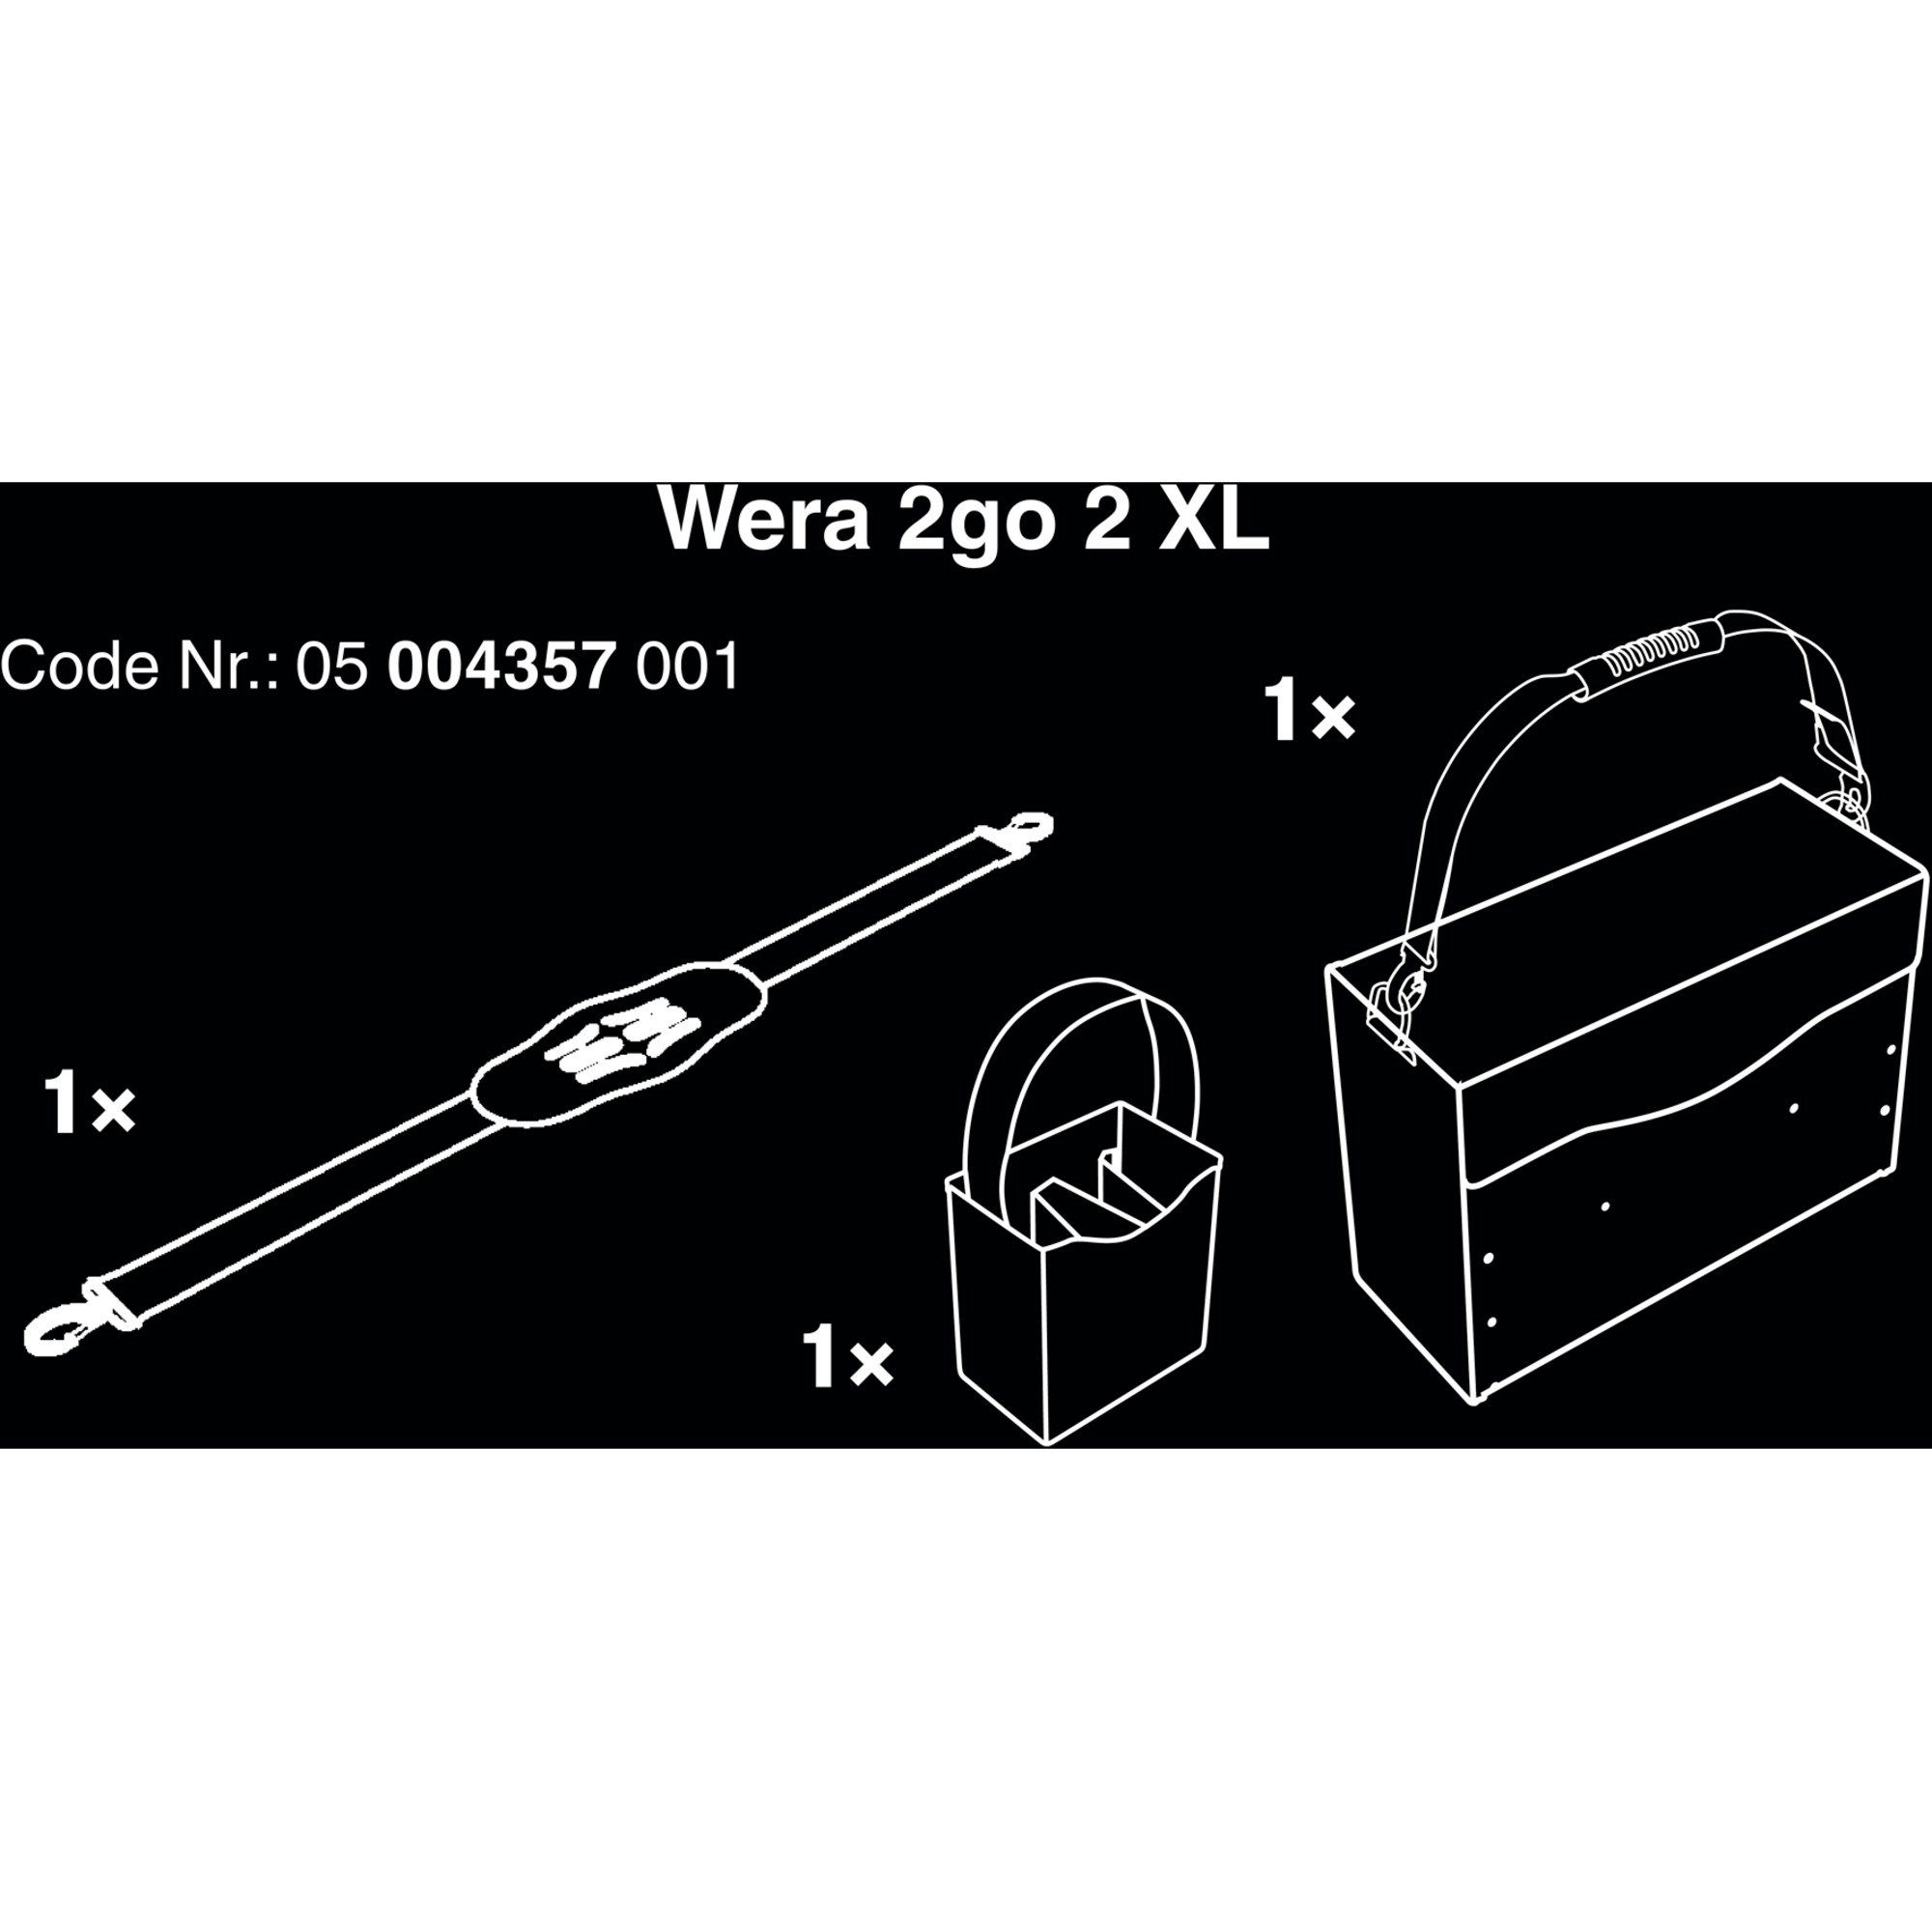 2go (mit XL, Wera 2 Werkzeugbox Tragegurt) Werkzeugkiste, Wera